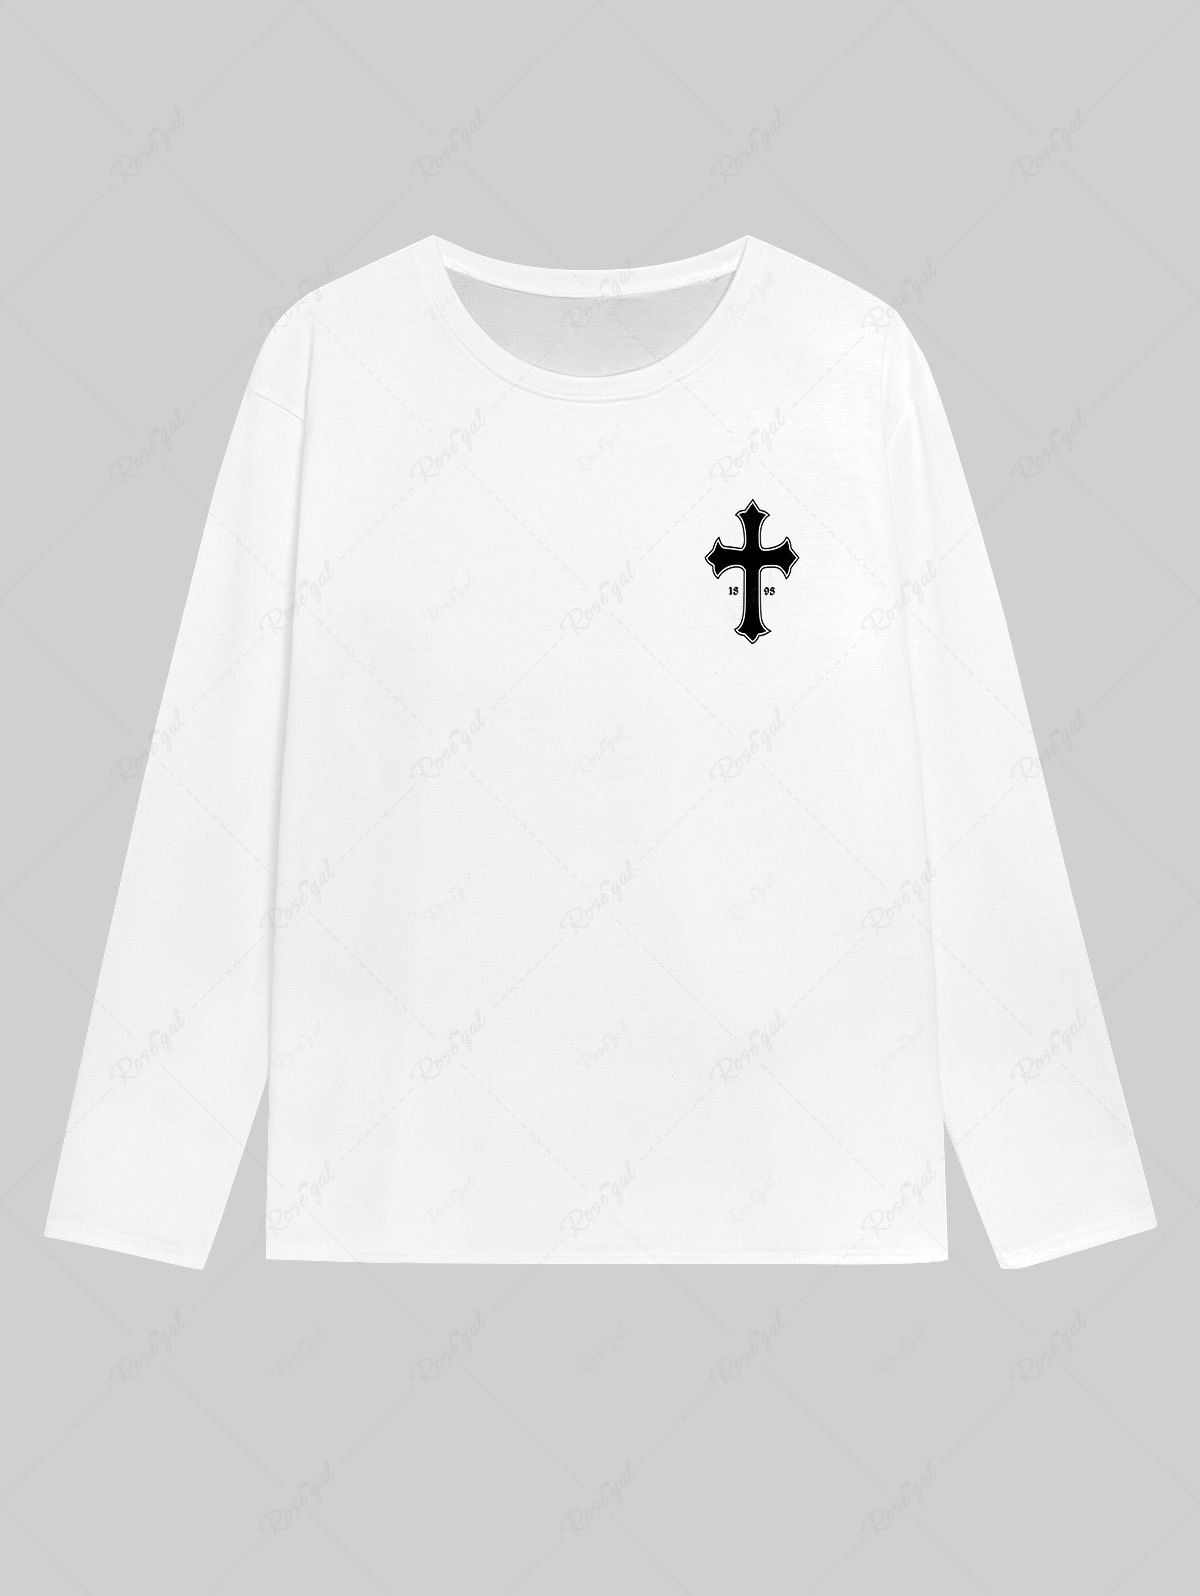 T-shirt Homme Gothique Imprimé Lettre et Croix Blanc M